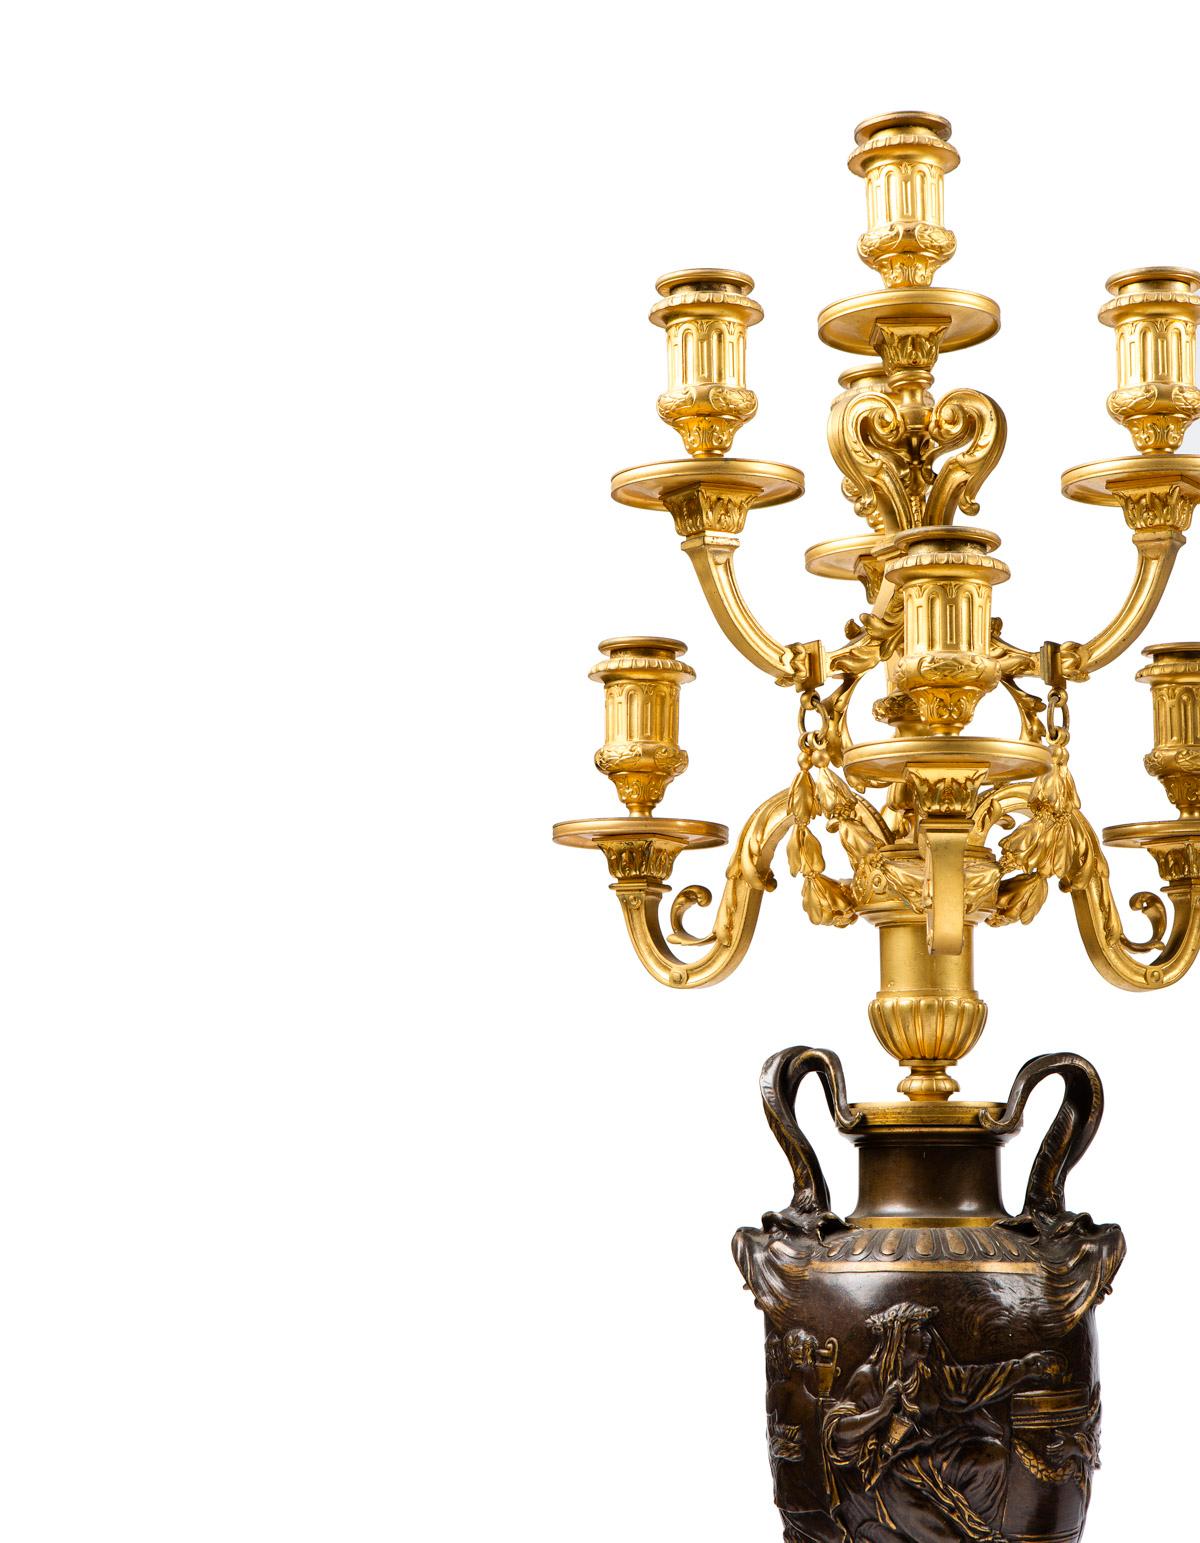 Ein feines Paar vergoldeter und patinierter Bronze-Kandelaber im neoklassischen Stil mit sieben Lichtern
von FERDINAND BARBEDIENNE
Originalzustand, dieses Paar wurde nie berührt.